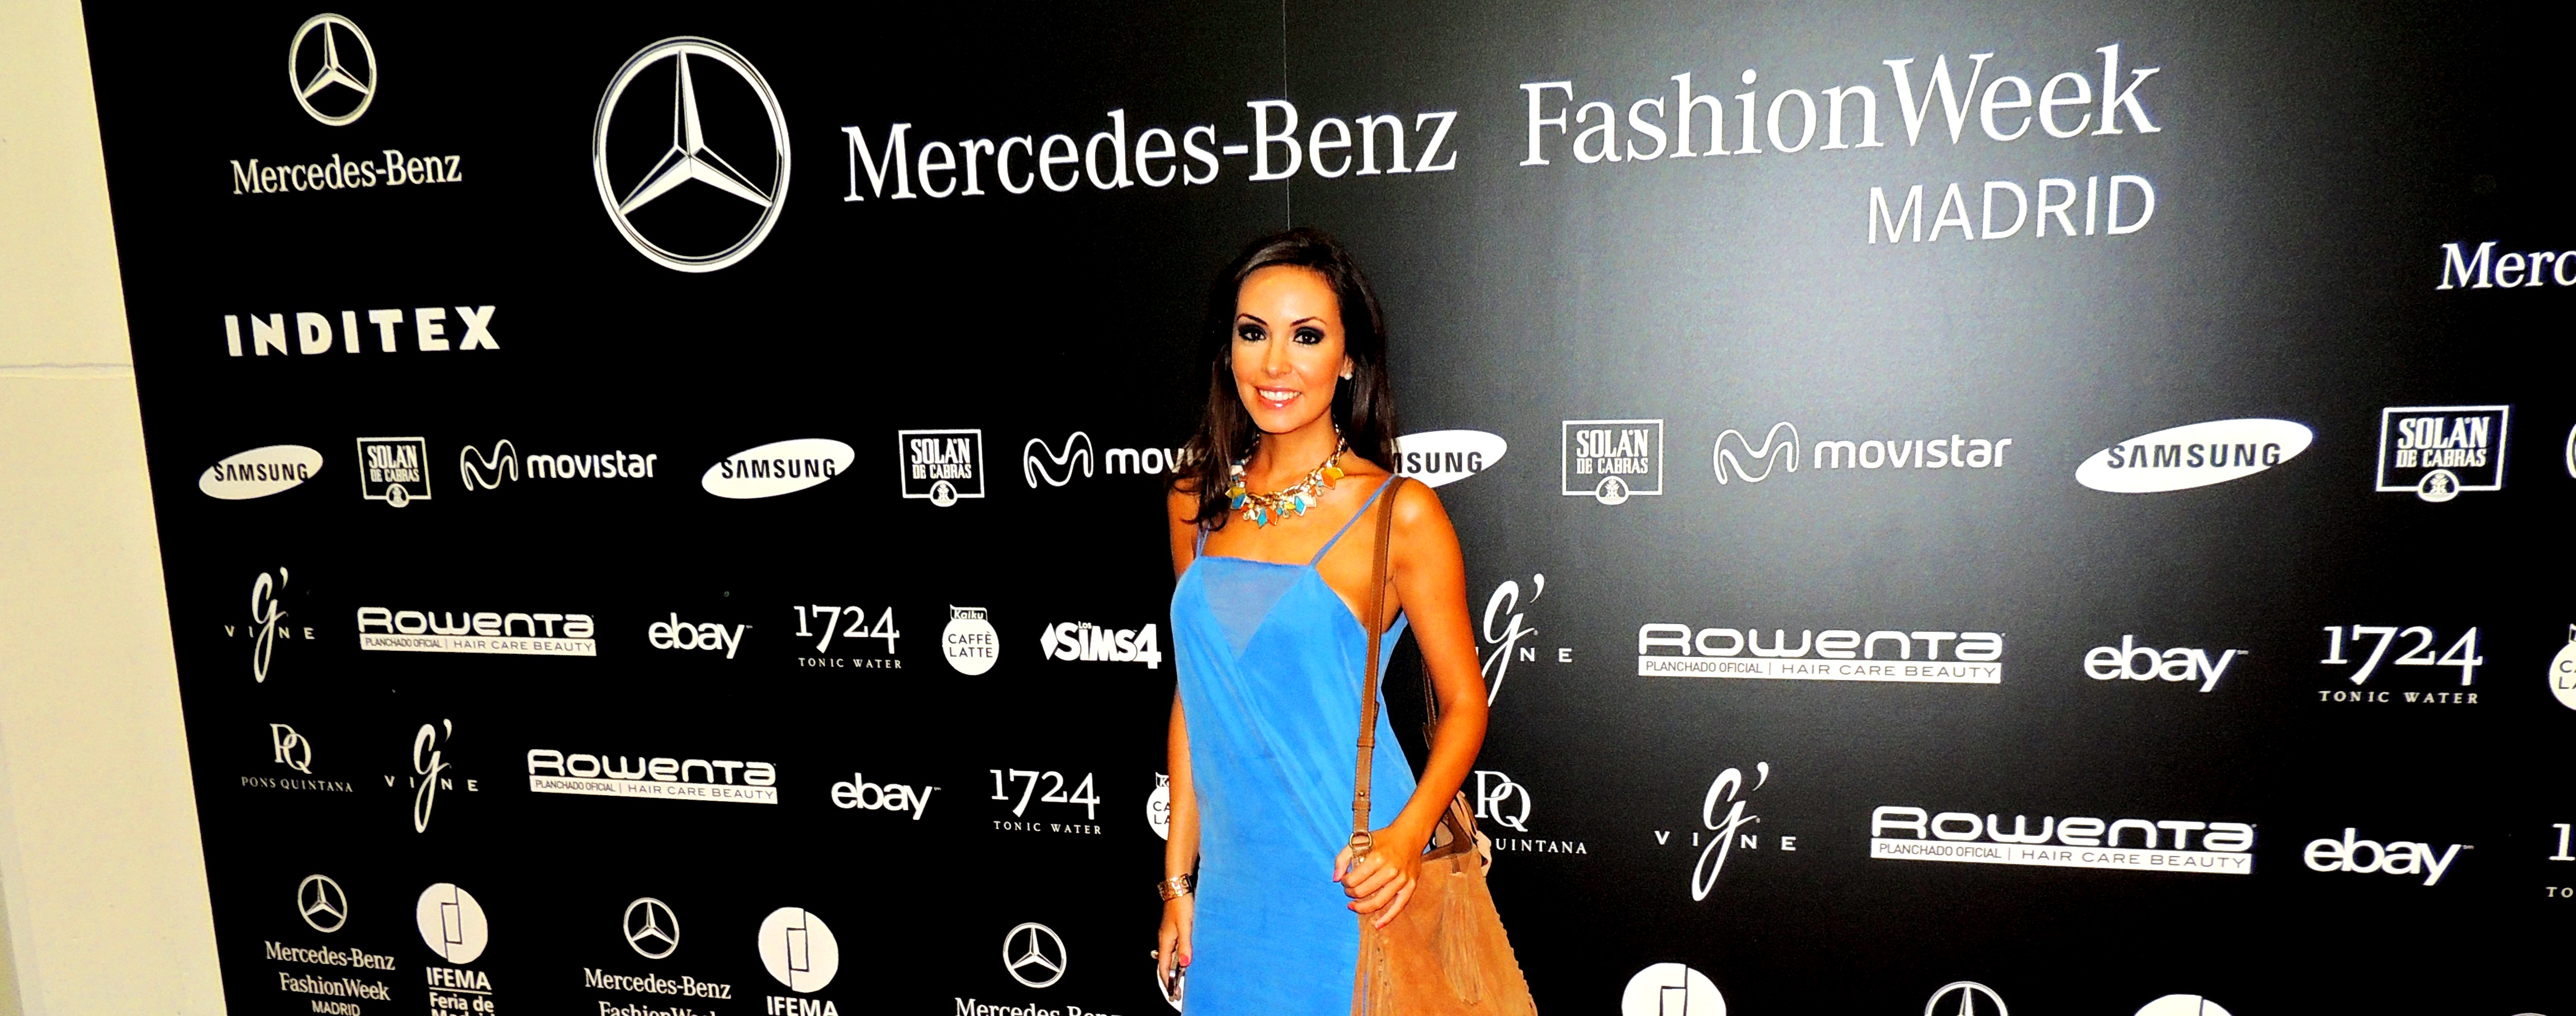 Mercedes Benz Fashion Week Madrid 2014